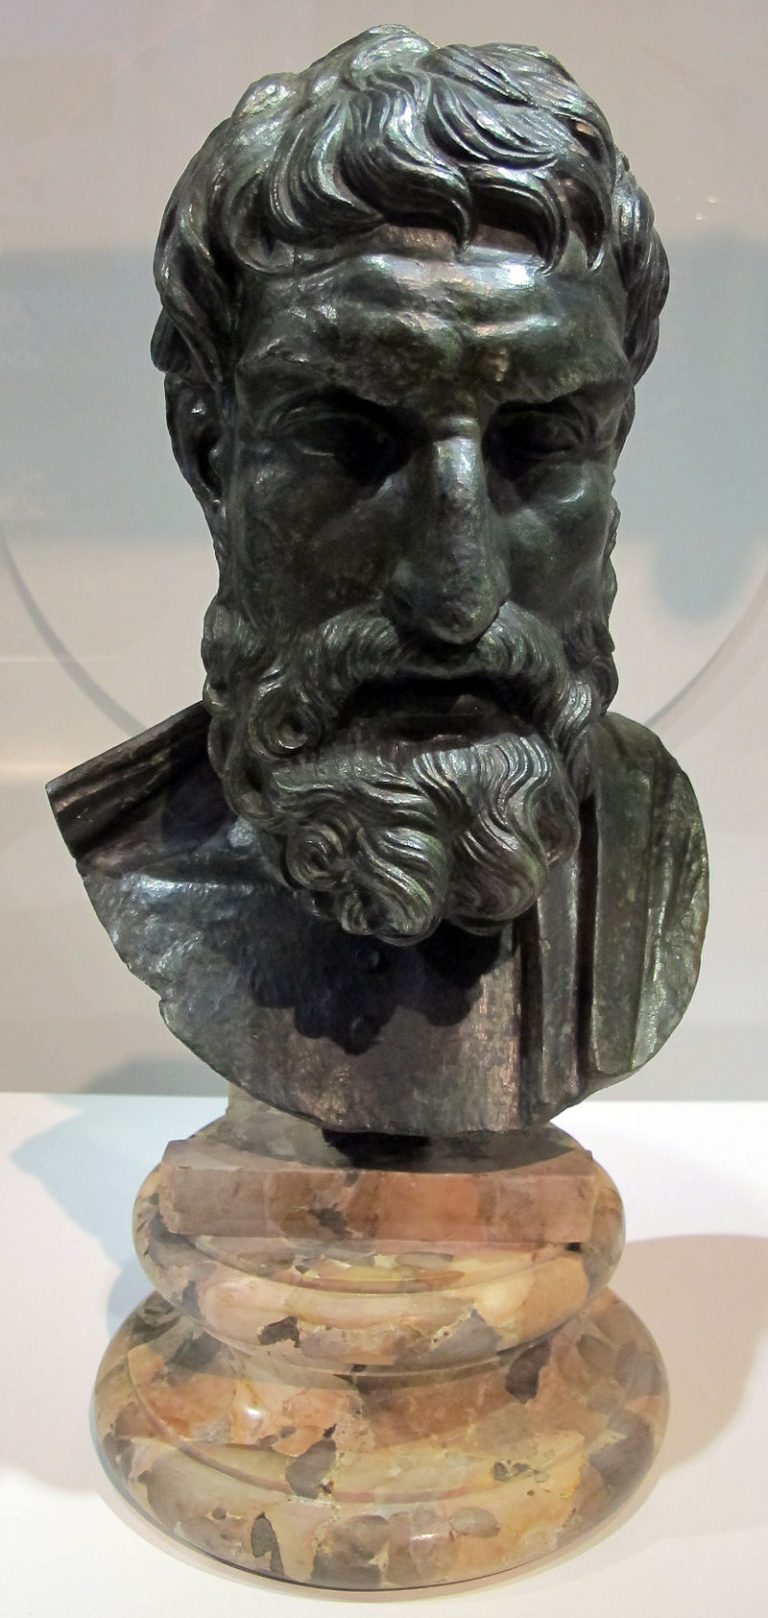 Epikuros je toho názoru, že filozofové by se do politiky plést rozhodně neměli.